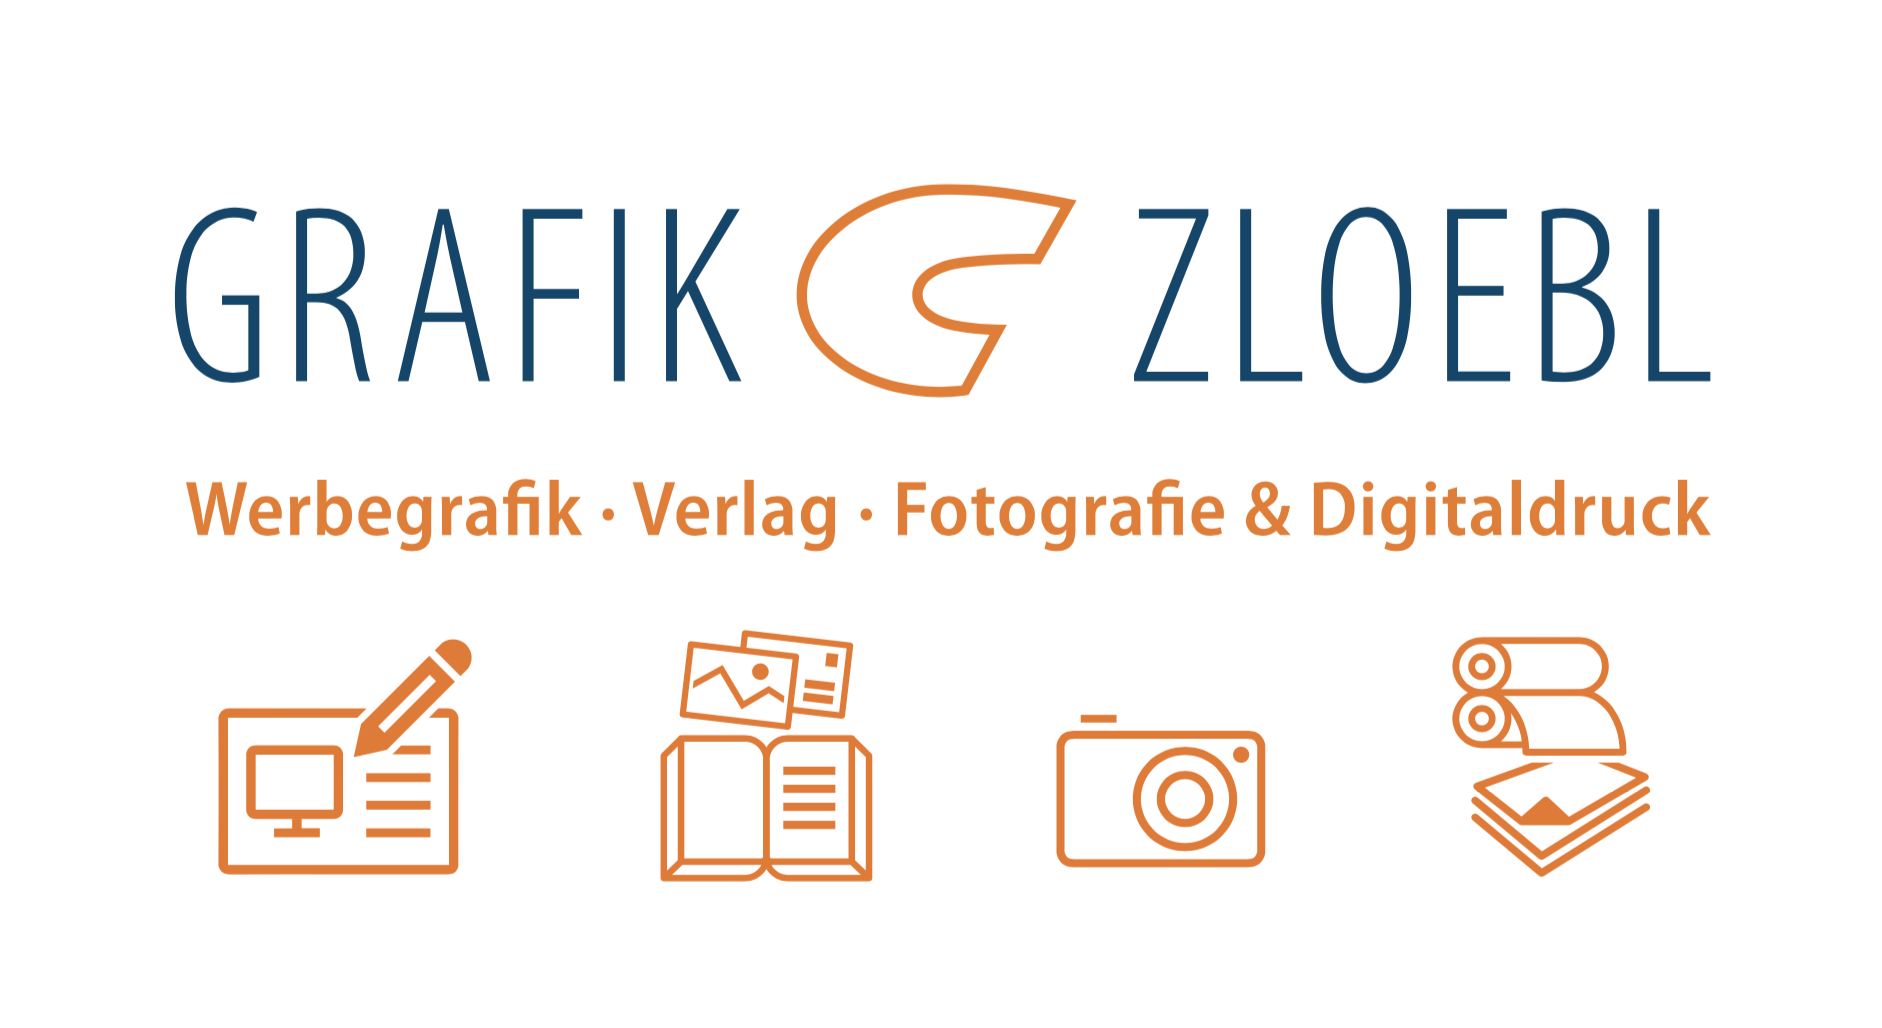 GRAFIK ZLOEBL GmbH